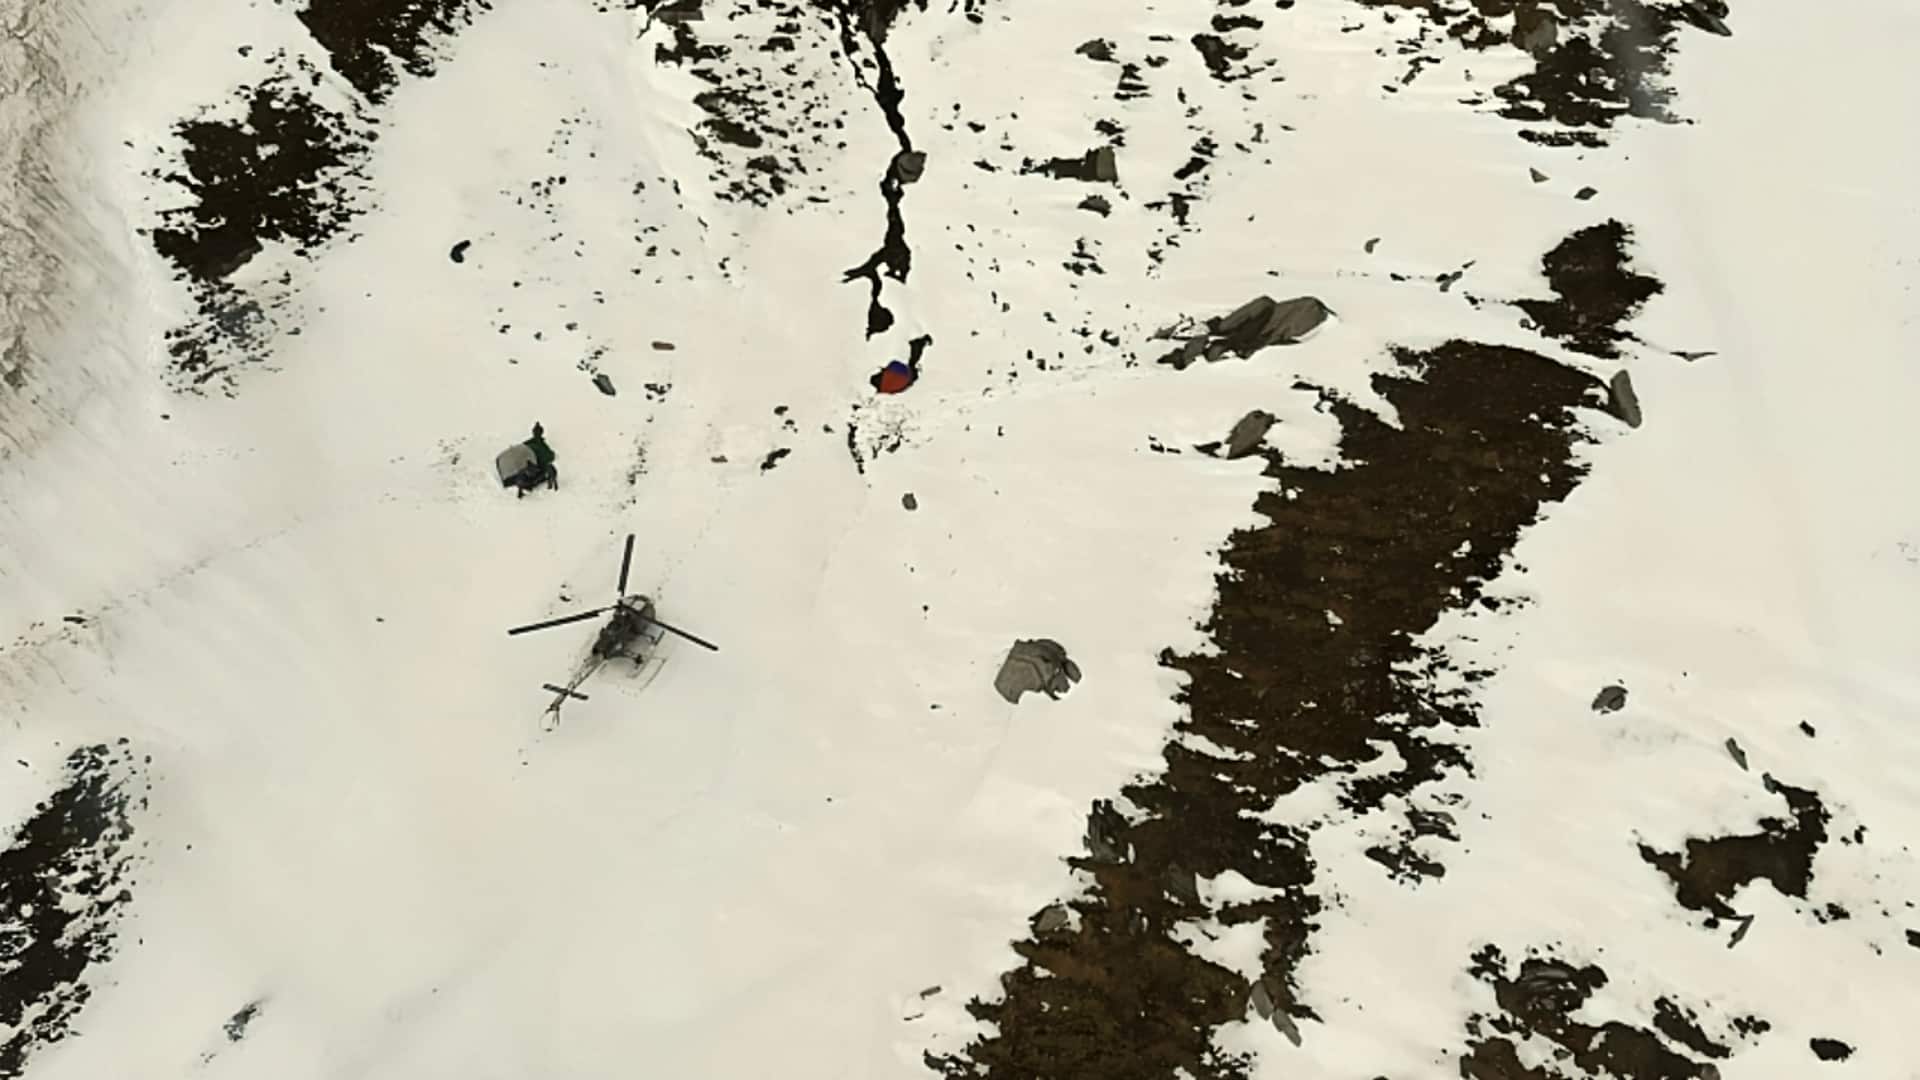 उत्तराखंड: उत्तरकाशी में बर्फीले तूफान से ट्रैकिंग दल के 9 सदस्यों की मौत, शव बरामद